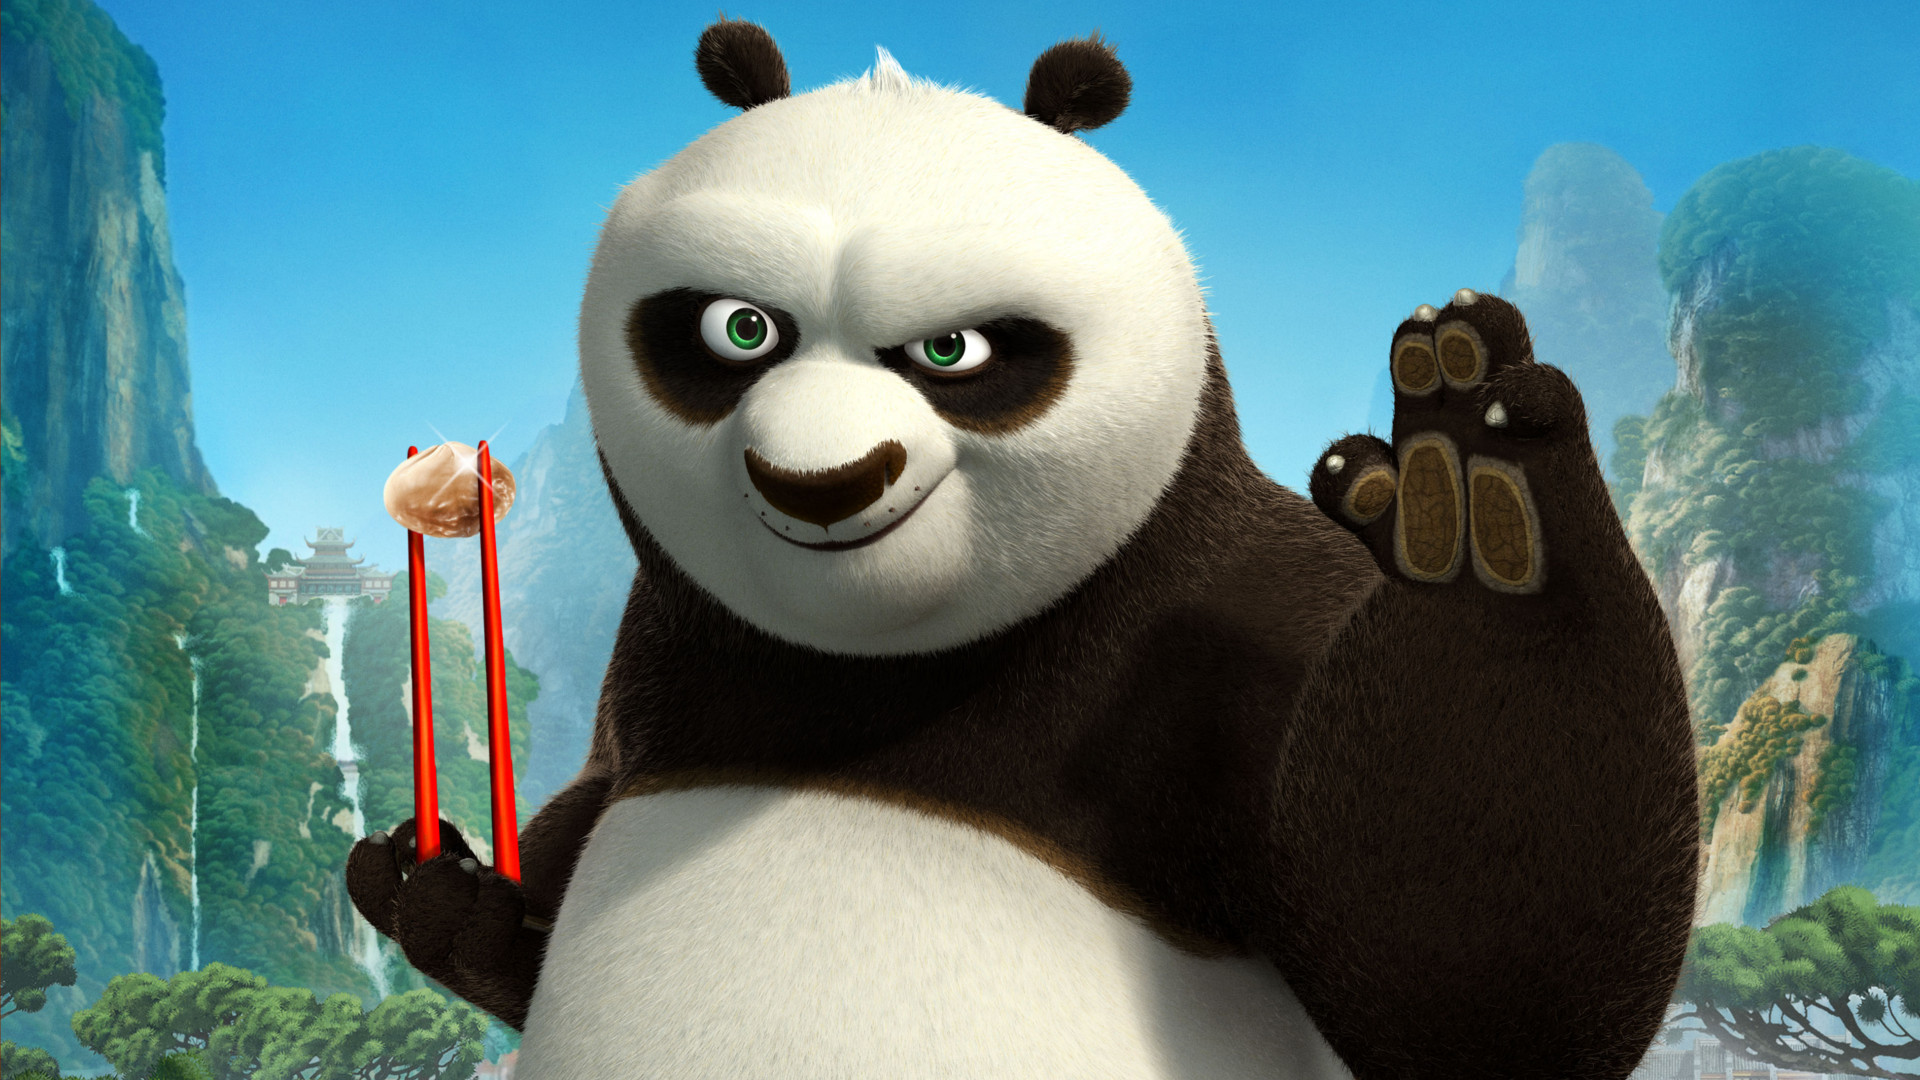 Desktop Wallpaper Kung Fu Panda, 2008 Animated Movie, Panda, Hd Image,  Picture, Background, Np346k